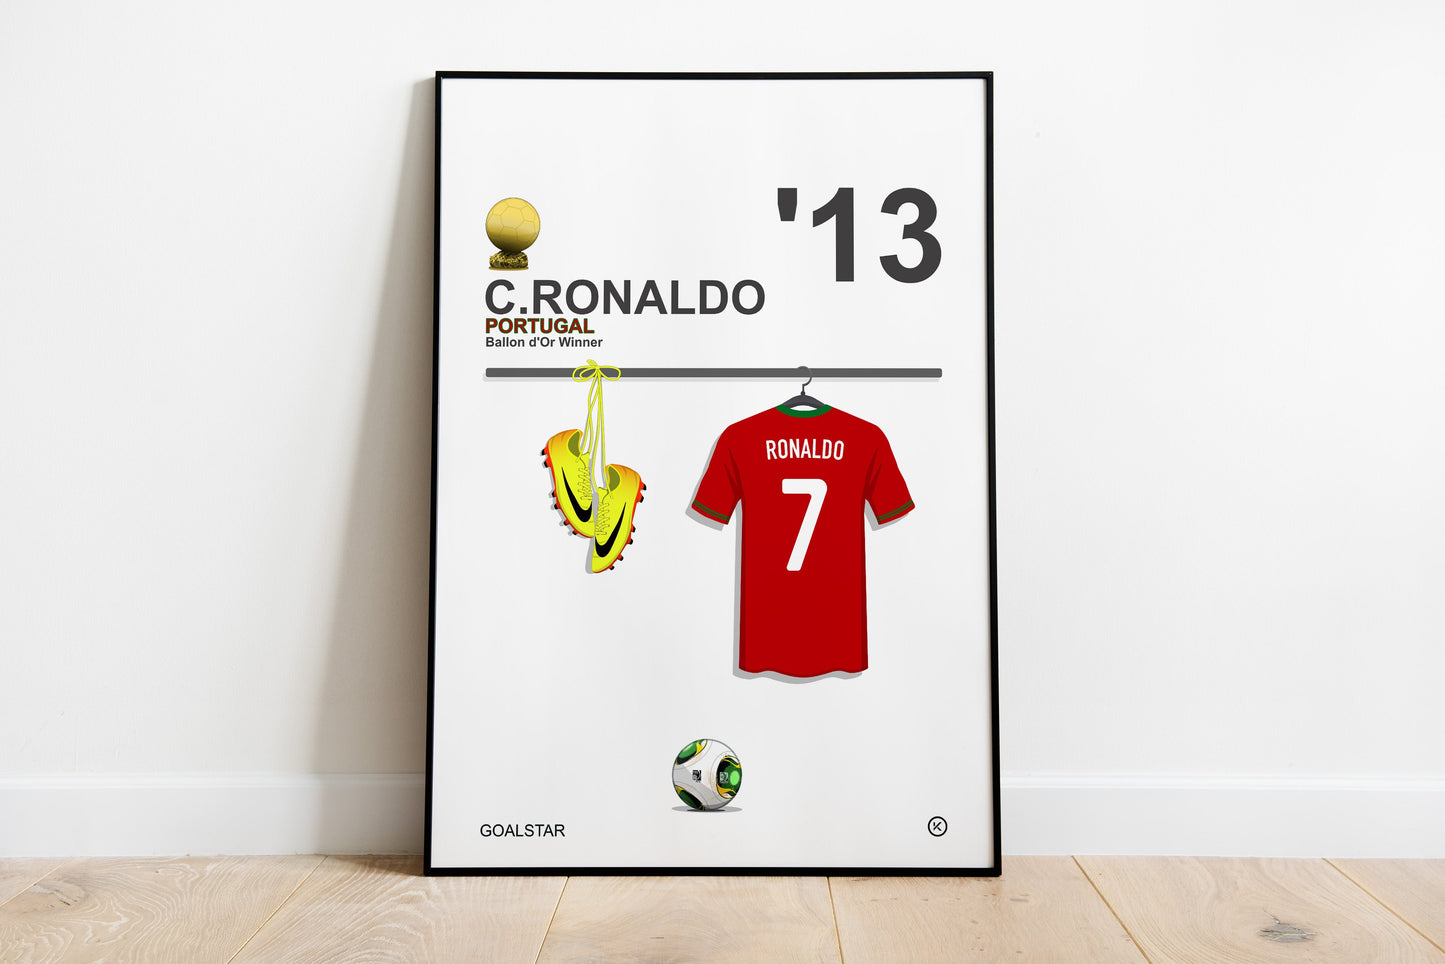 Cristiano Ronaldo - Ballon d'Or Winner 2013